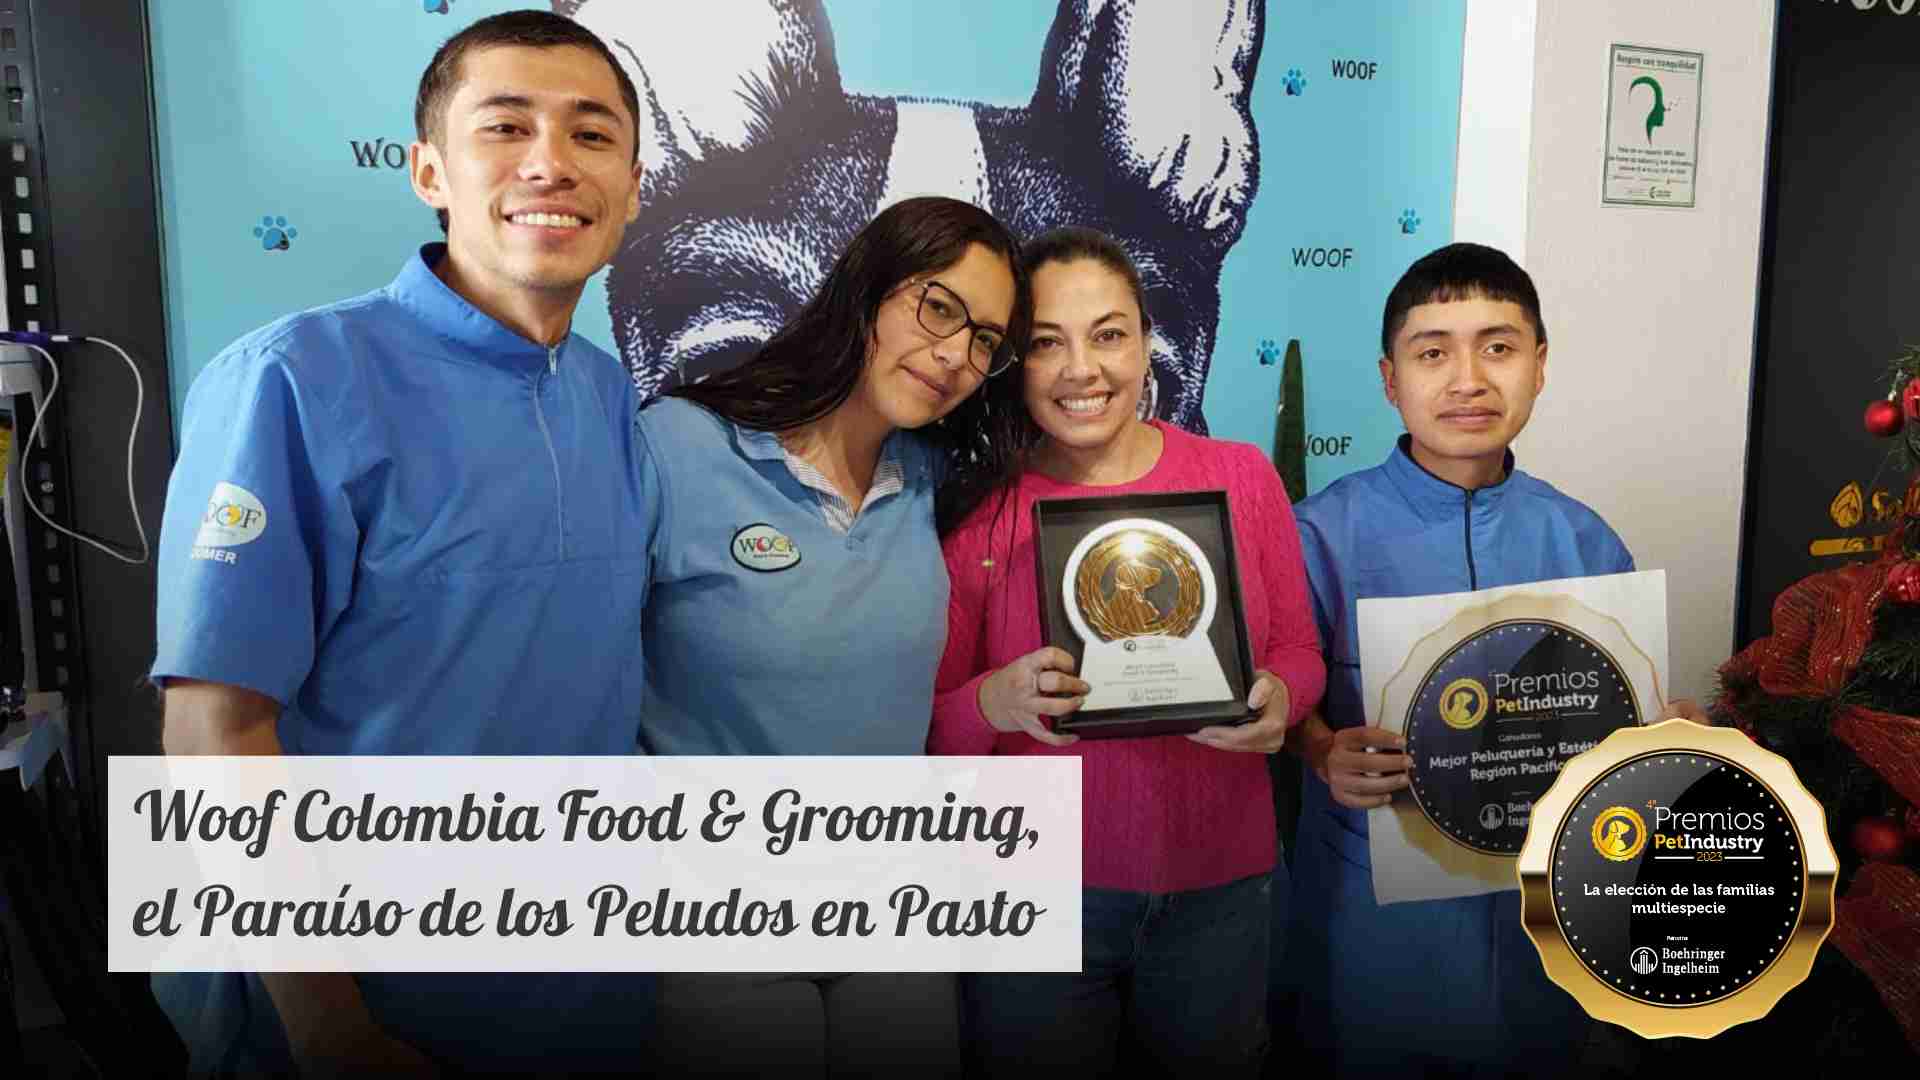 Woof Colombia Food & Grooming, el Paraíso de los Peludos en Pasto